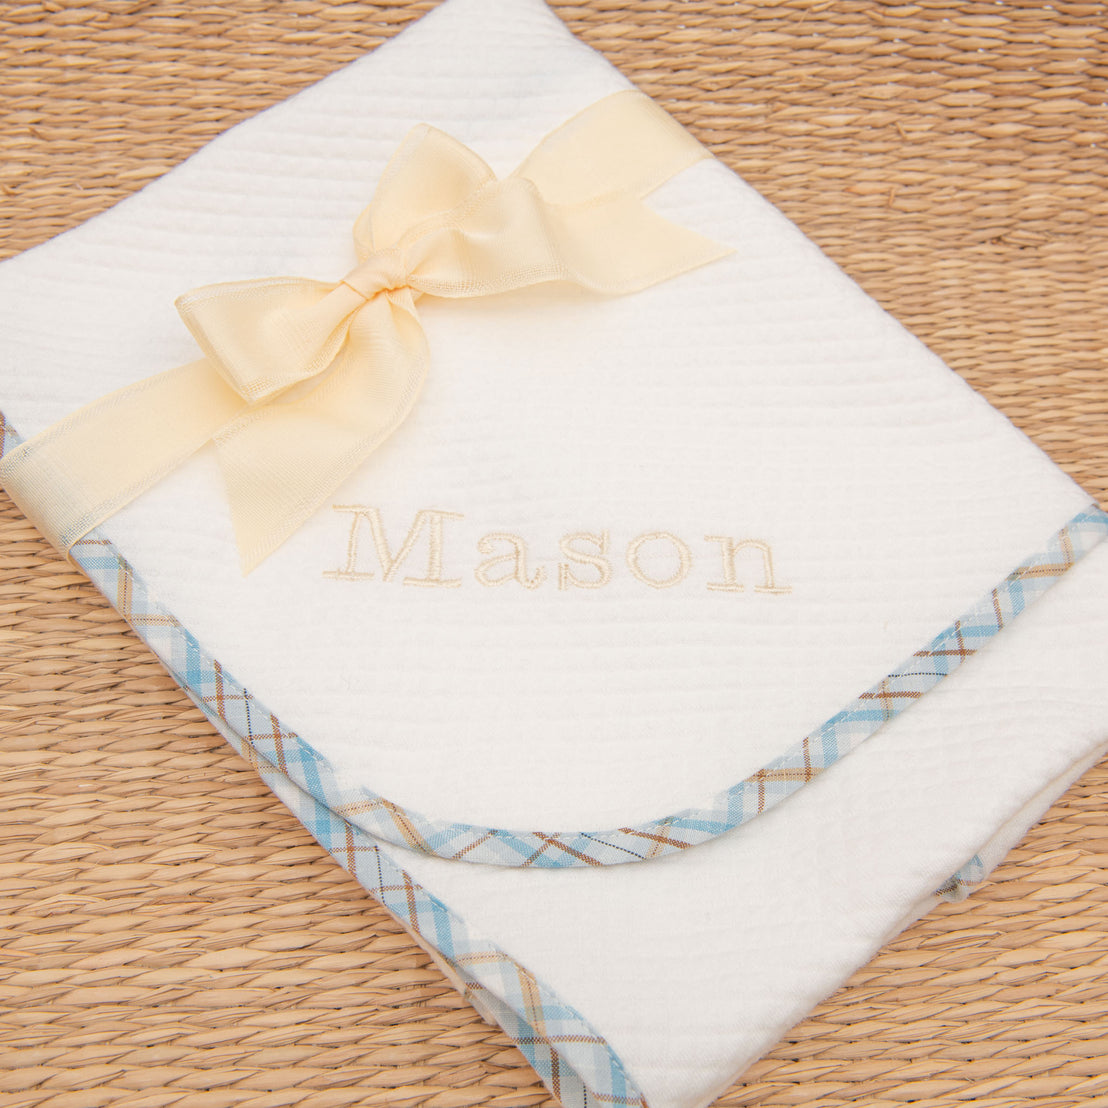 Mason Newborn Gift Set - Save 10%